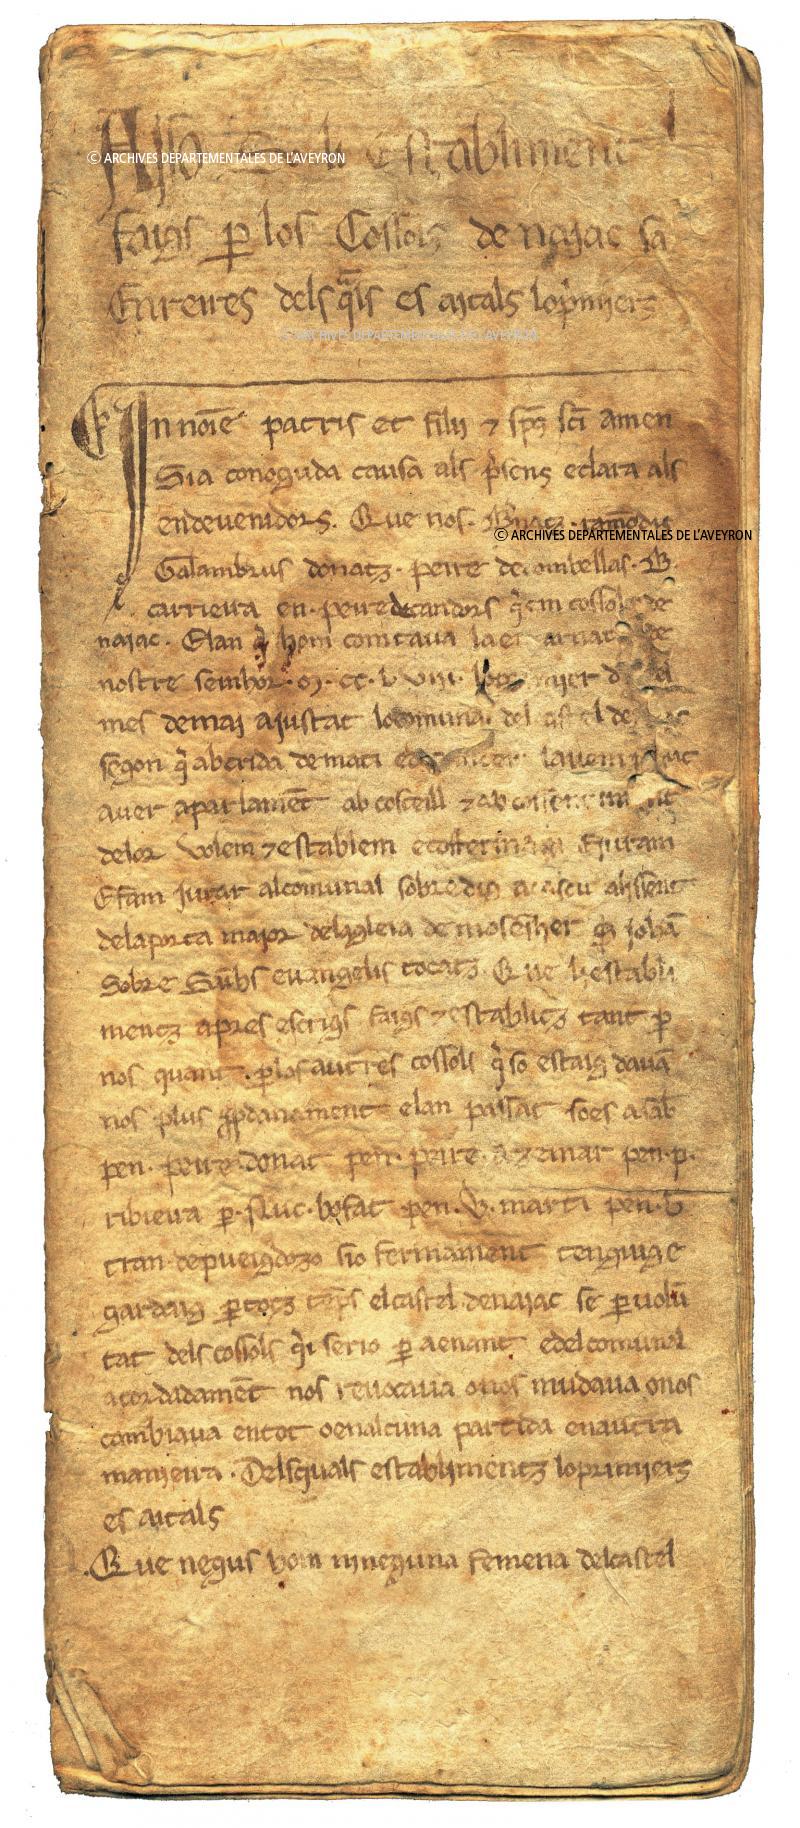  Règlement en occitan sur les baptêmes, sur quelques pratiques somptuaires et sur l’occupation illicite du domaine public, 1er mai 1258